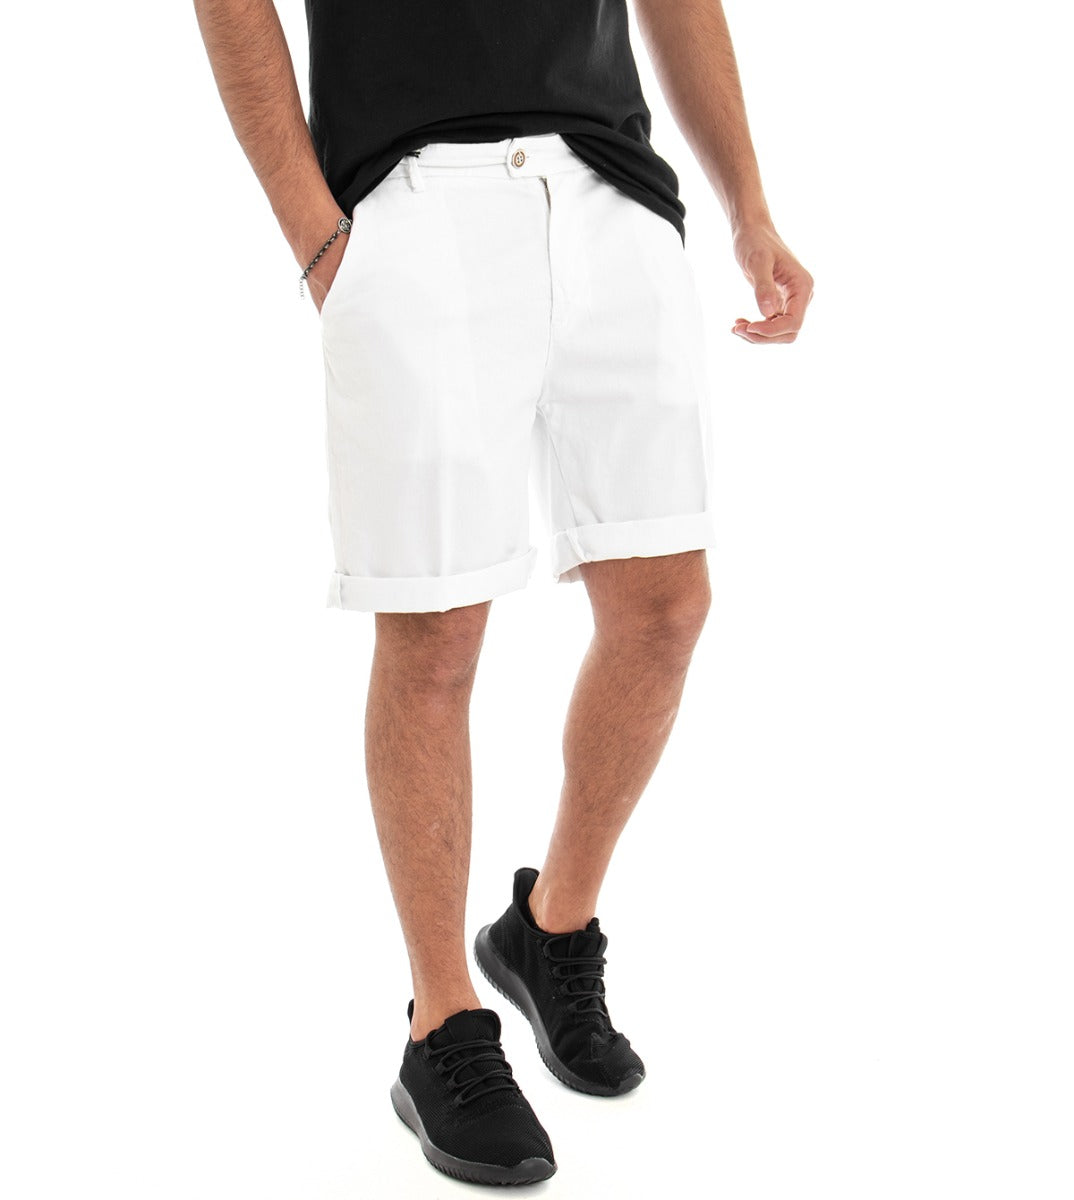 Bermuda Pantaloncino Uomo Corto Cotone Bianco Tasca America GIOSAL-PC1379A